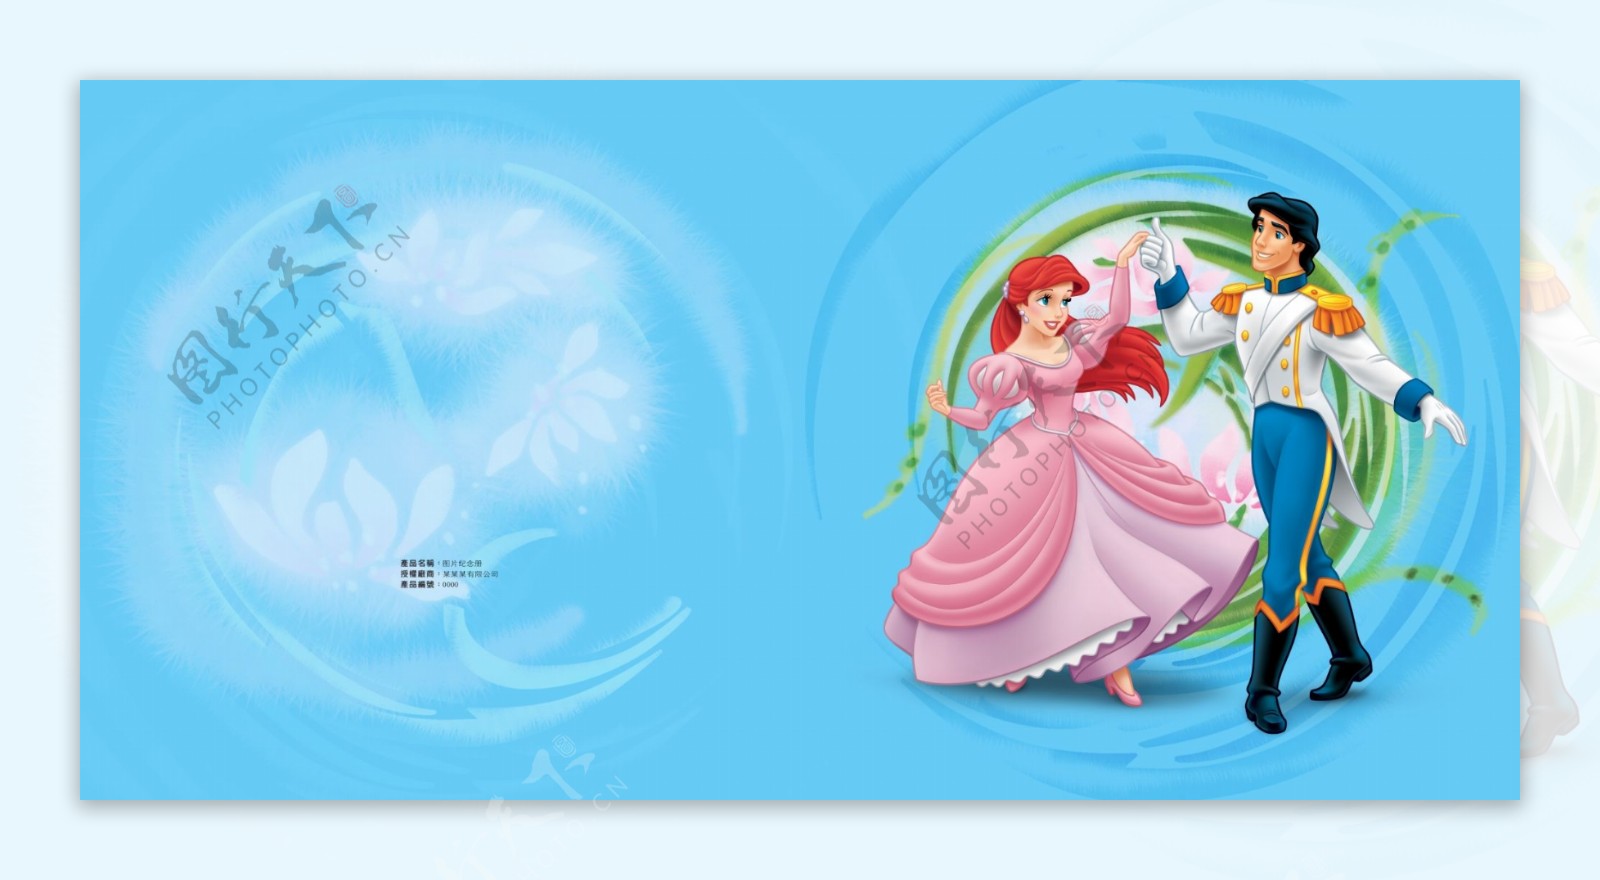 白雪公主与王子跳舞封面设计